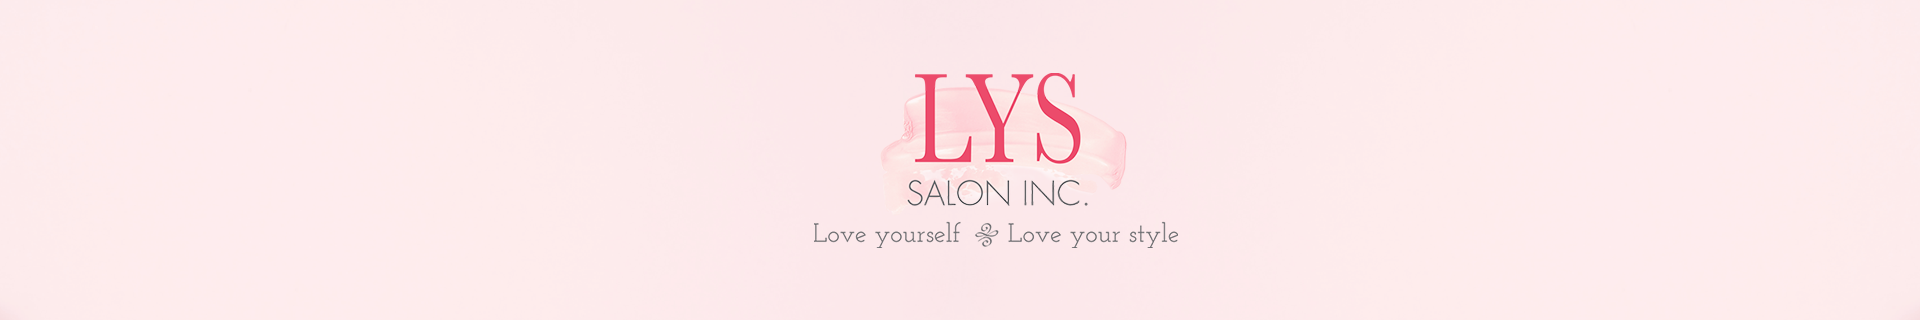 LYS Salon